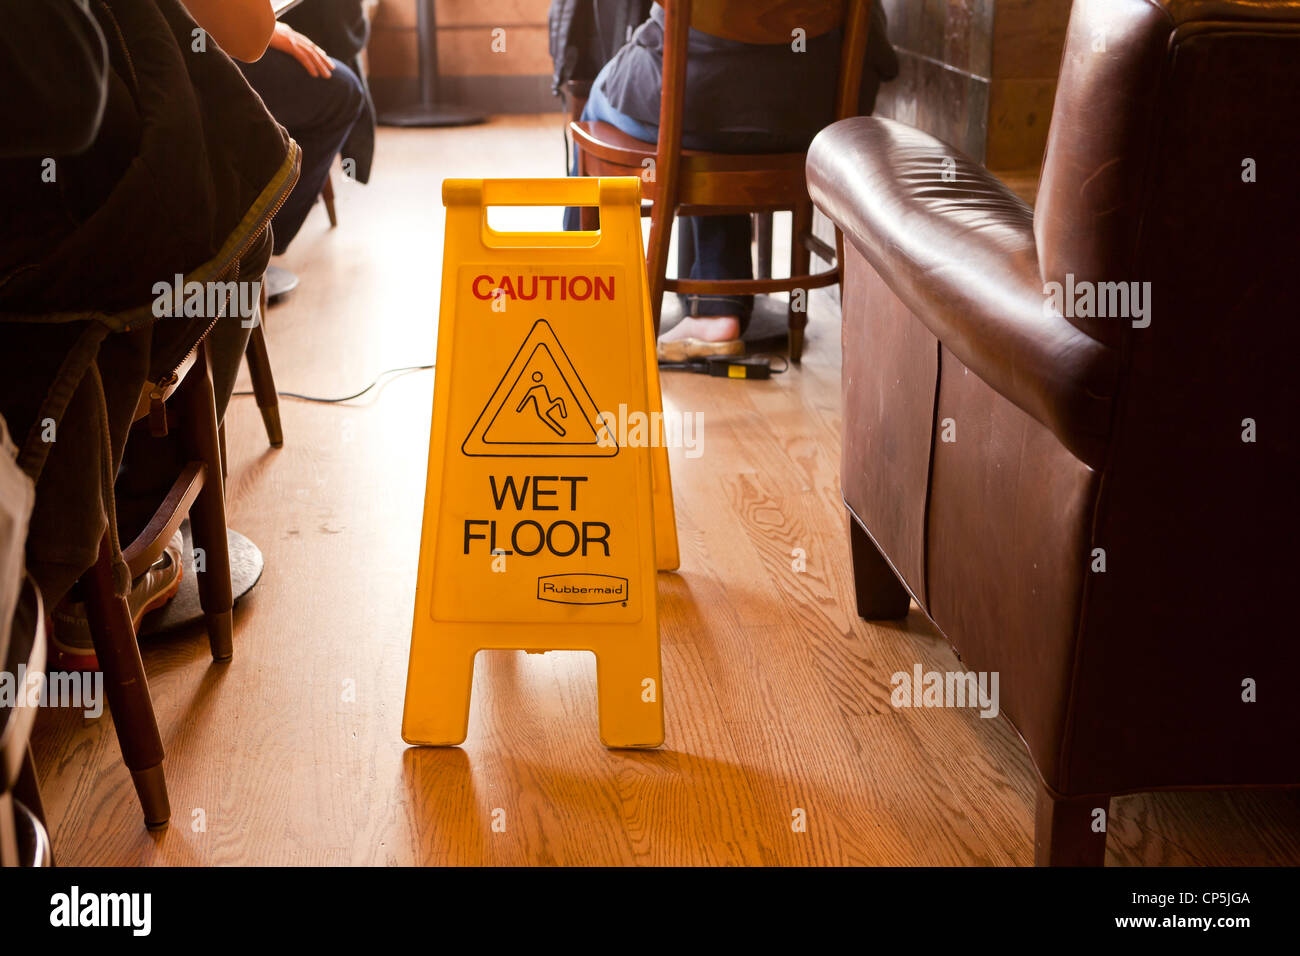 Pavimento bagnato segno di sicurezza nel coffee shop Foto Stock